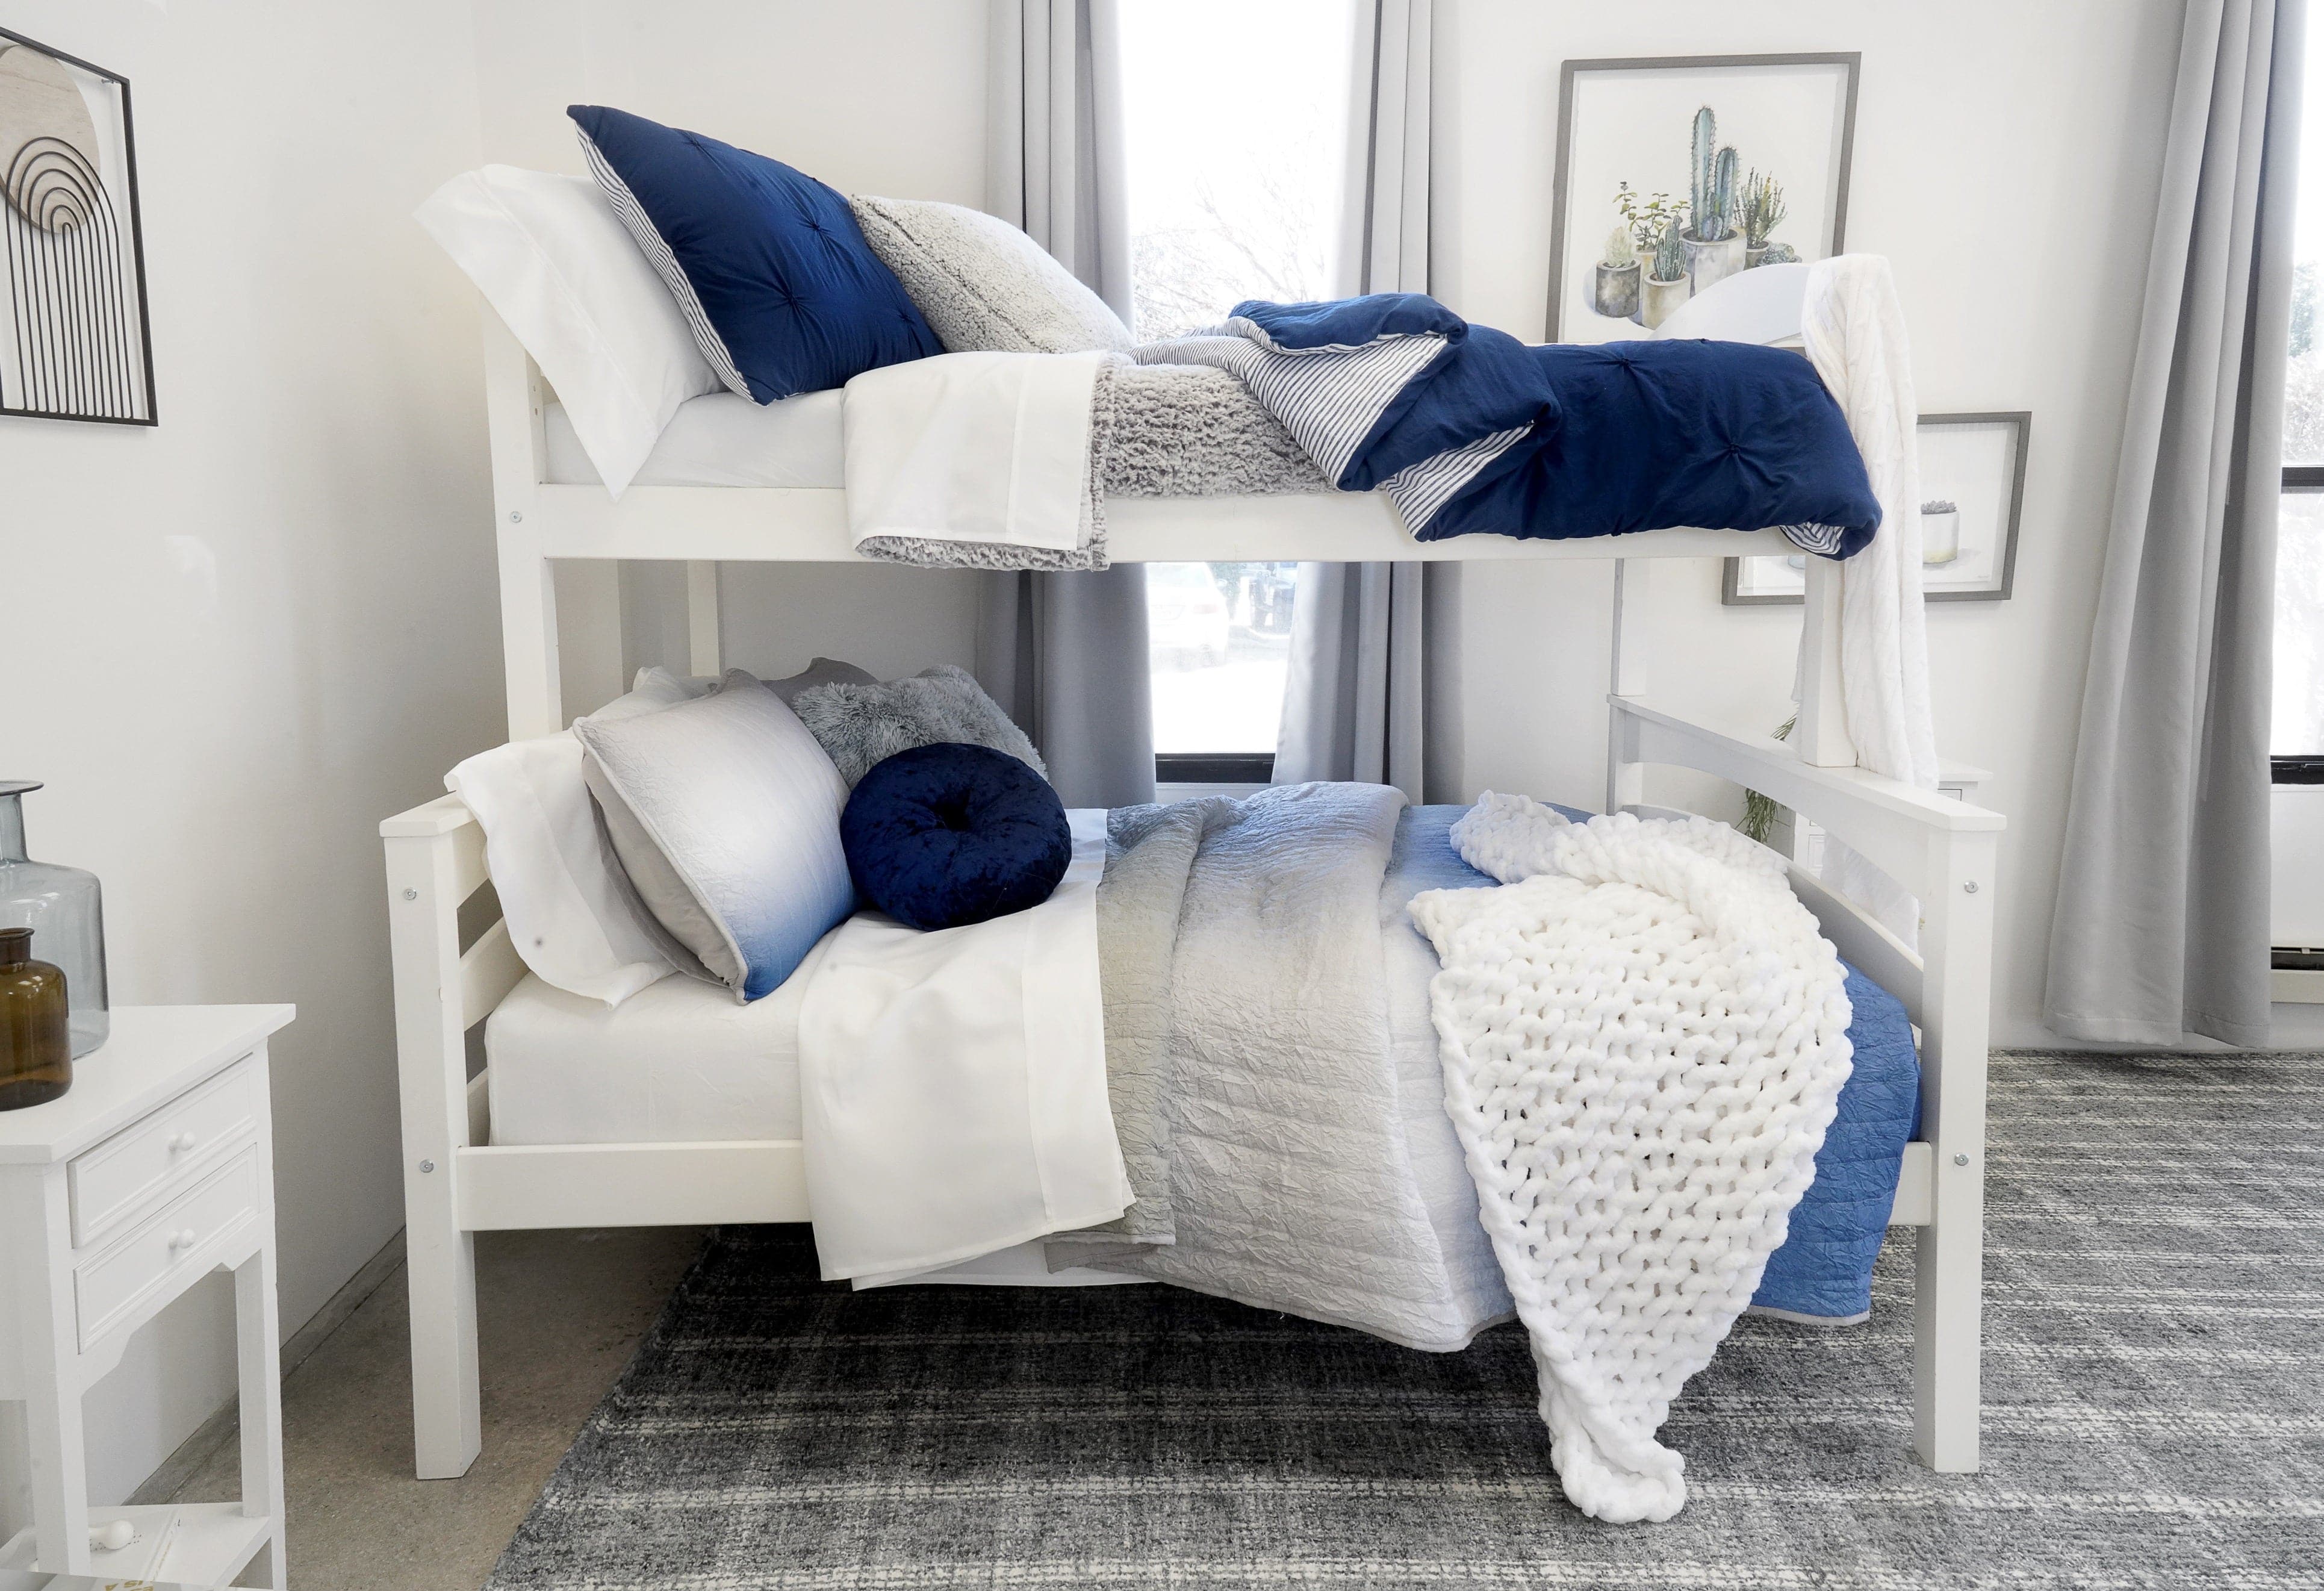 Bedding Bundle: Crinkle Ombre Quilt Set + Emma Faux Fur Comforter Set